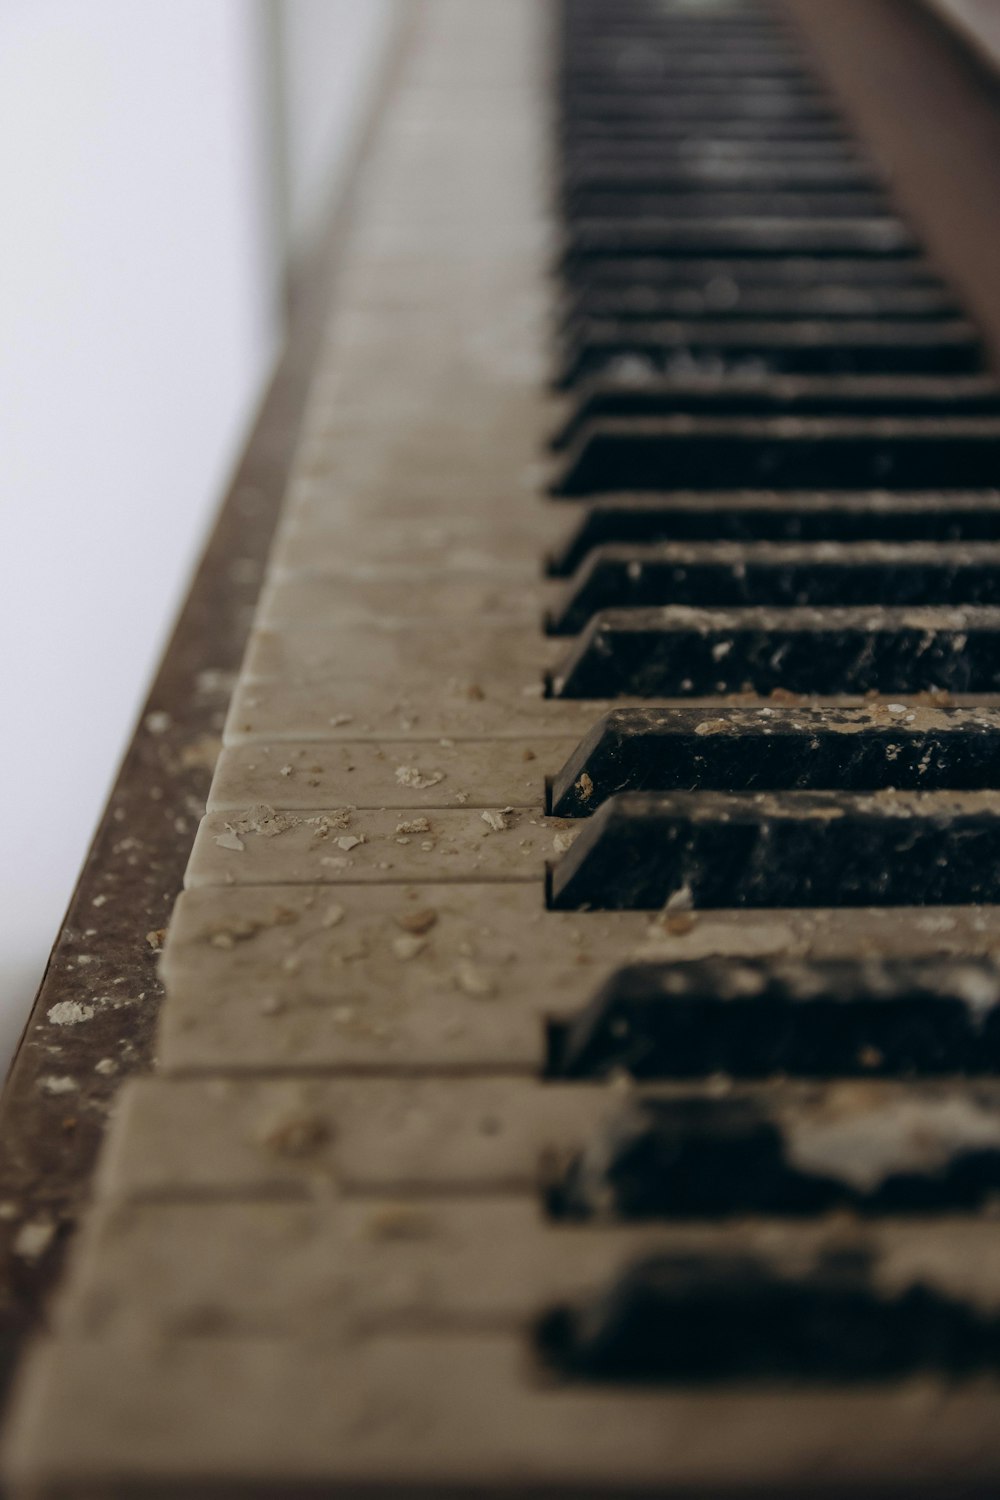 teclas de piano en blanco y negro